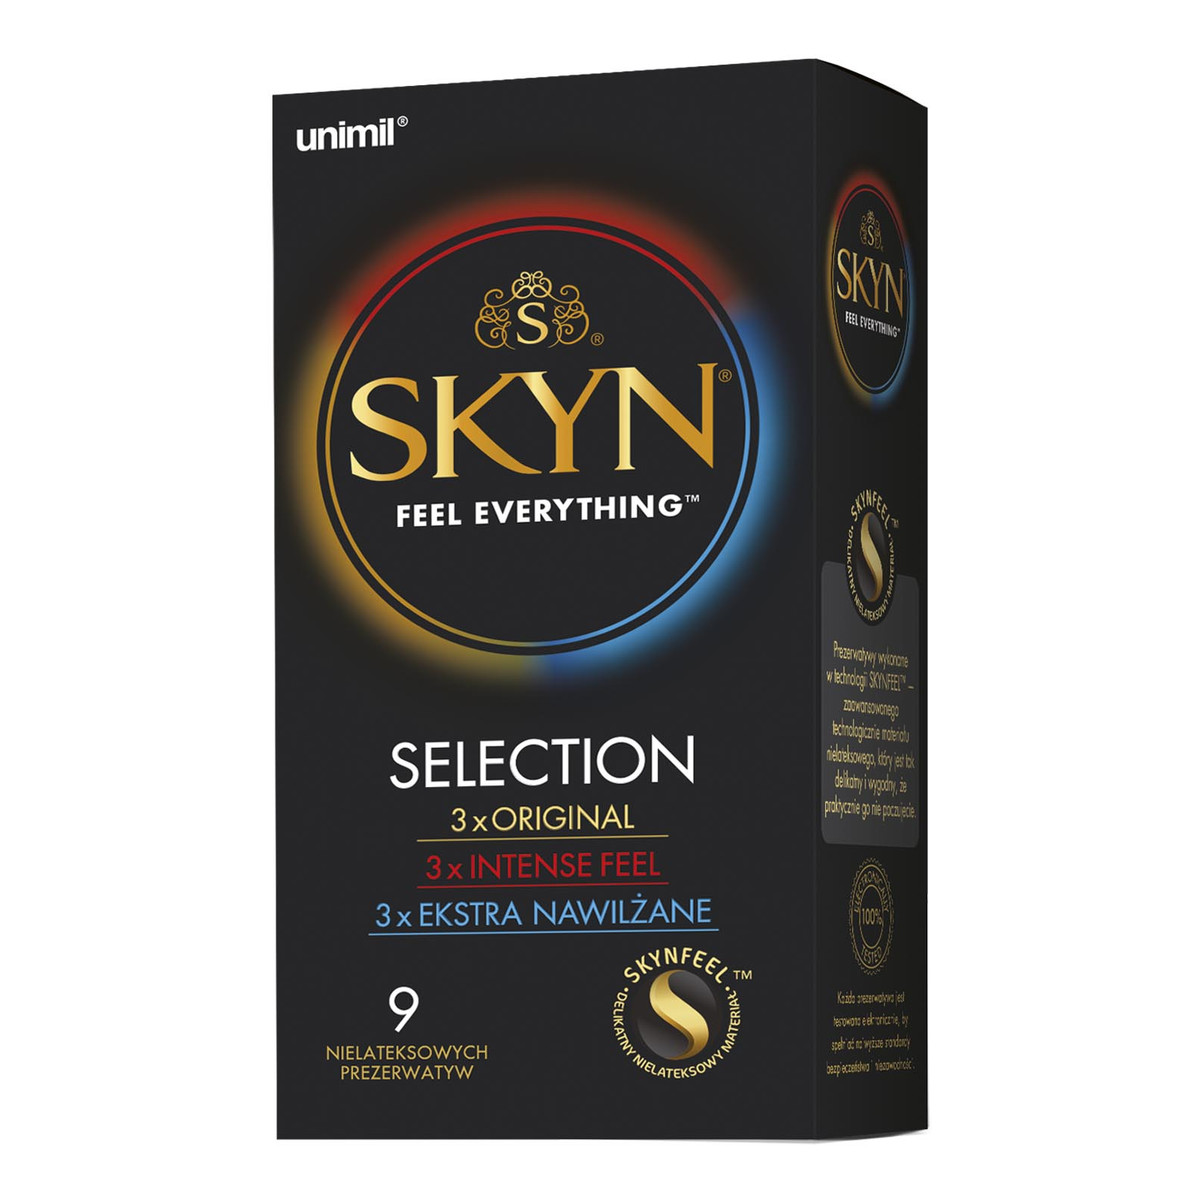 Unimil Skyn Feel Everything Selection nielateksowe prezerwatywy 9szt